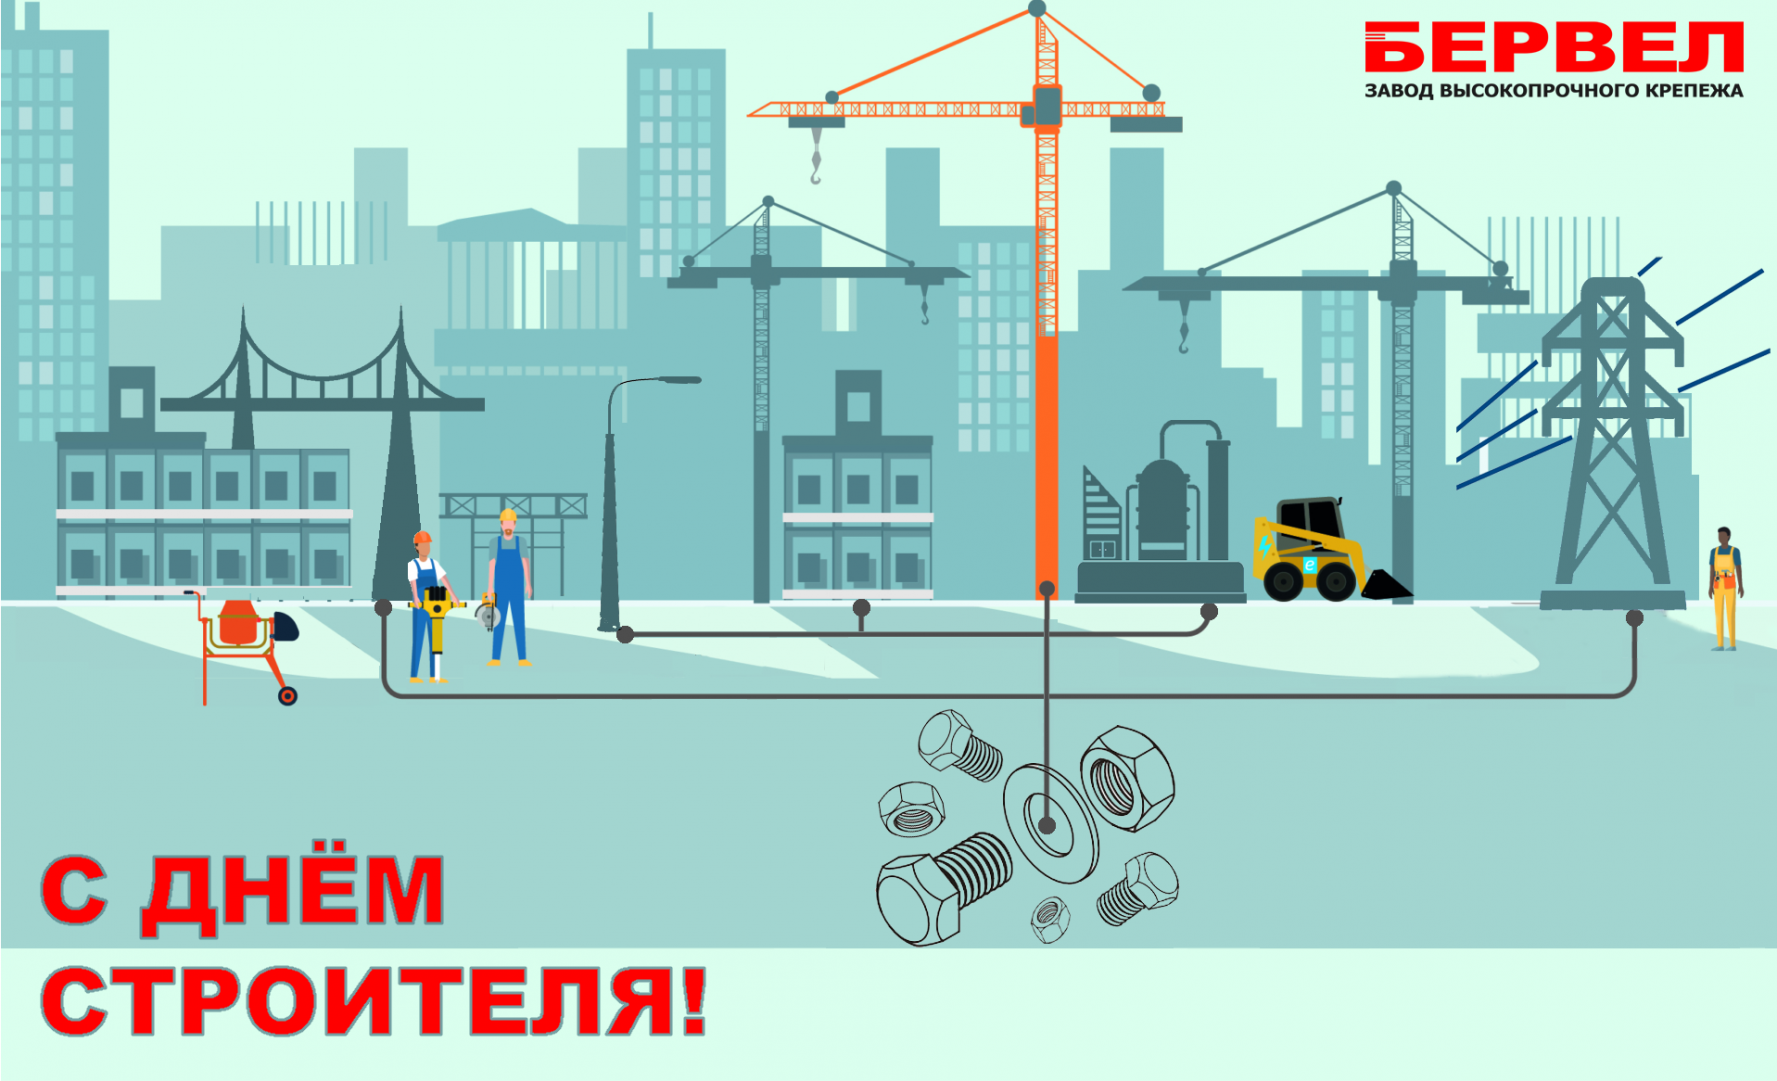 День строителя_БЕРВЕЛ.png